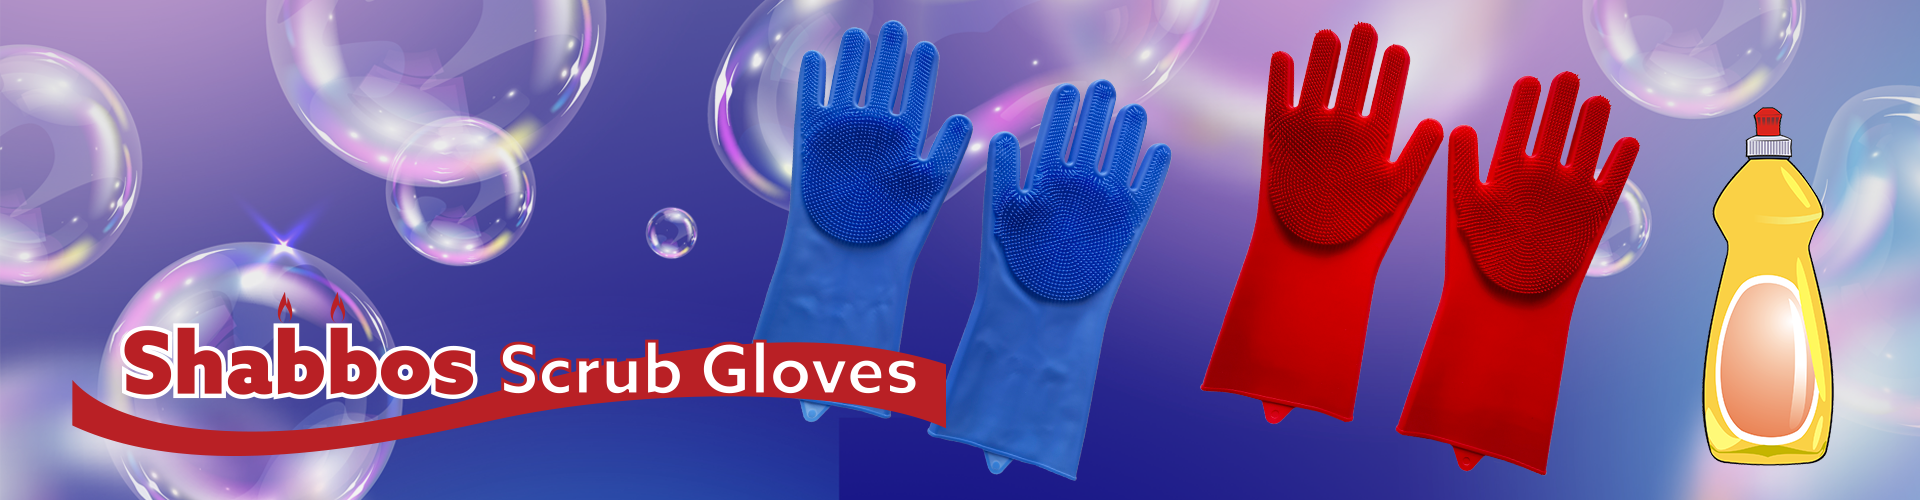 Shabbos Scrub Gloves